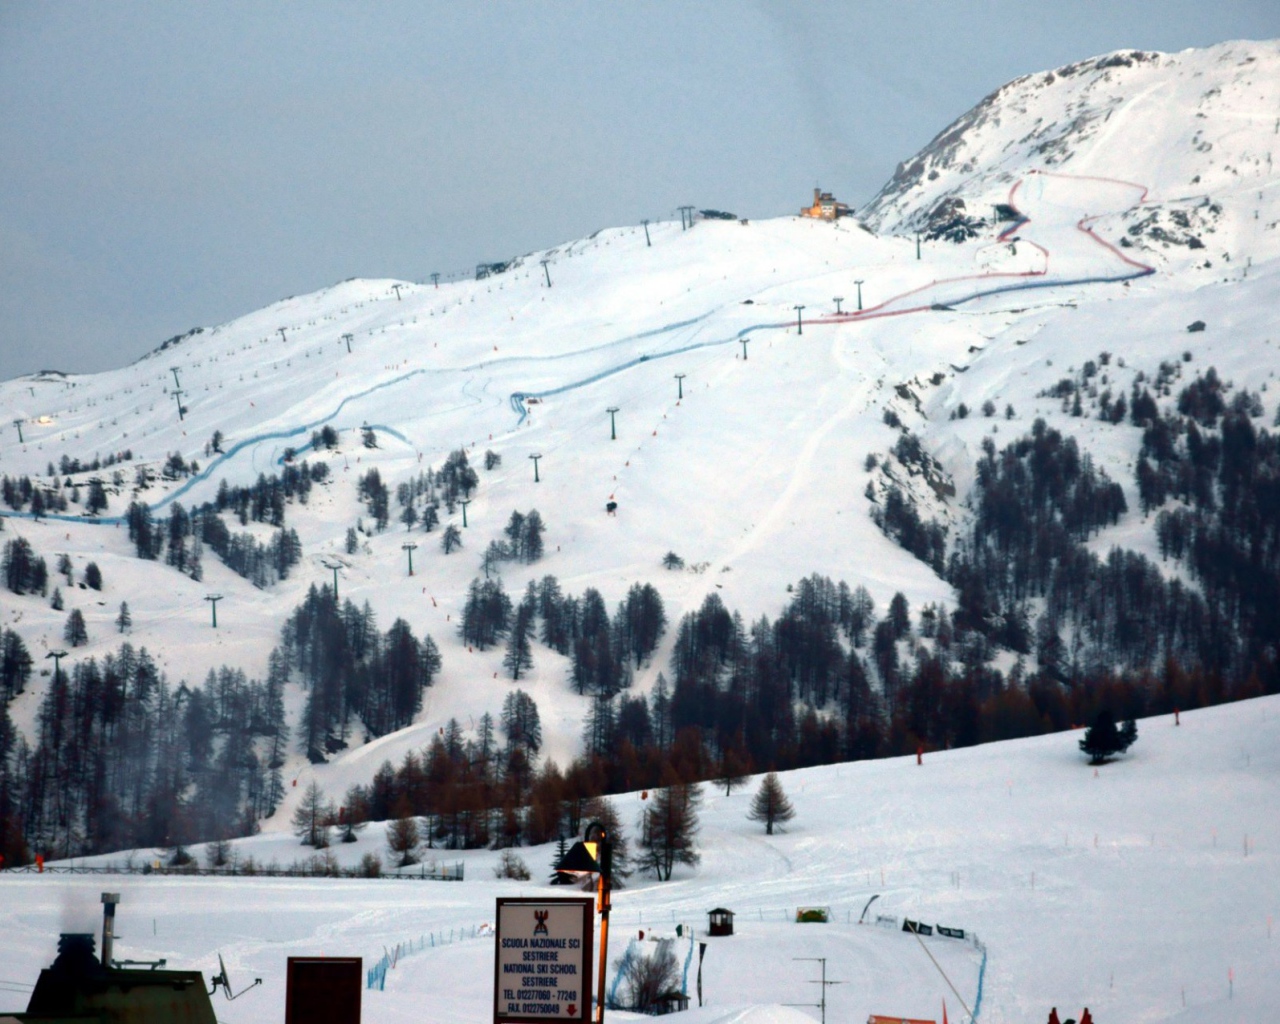 Ski piste in the ski resort of Sestriere, Italy